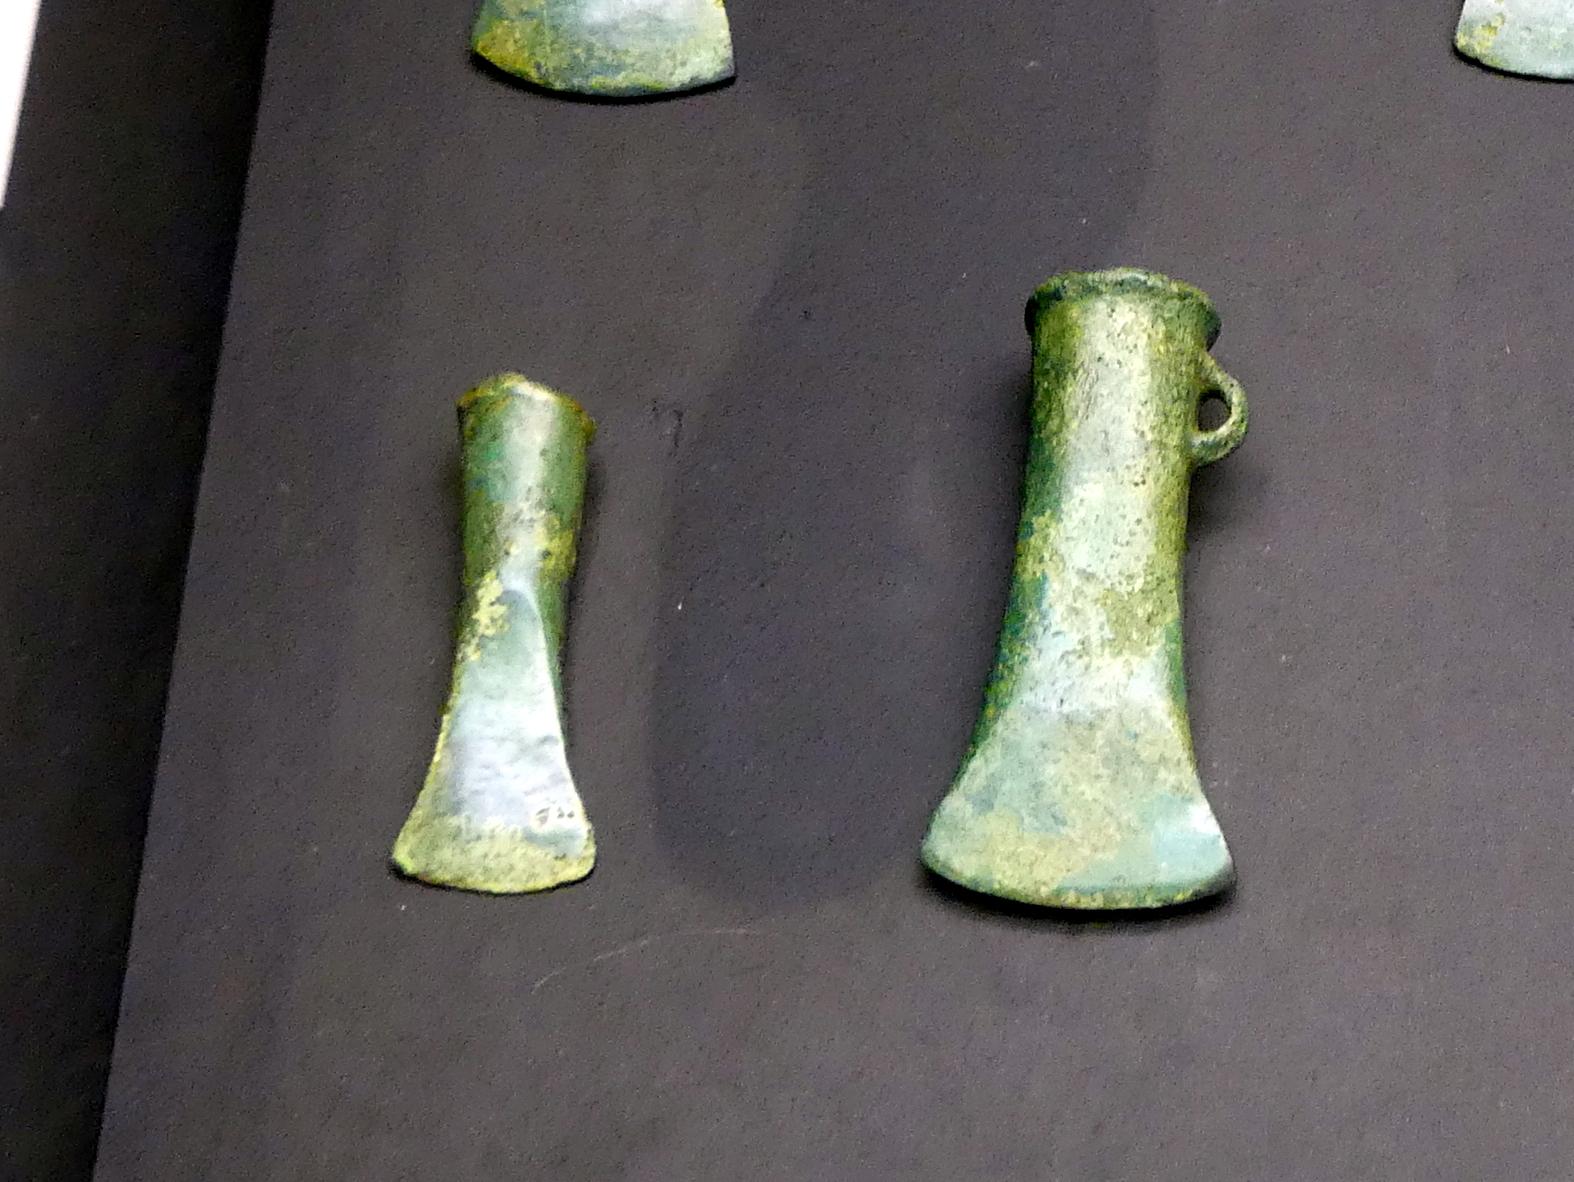 Tüllenbeile, Urnenfelderzeit, 1400 - 700 v. Chr., 900 - 700 v. Chr.